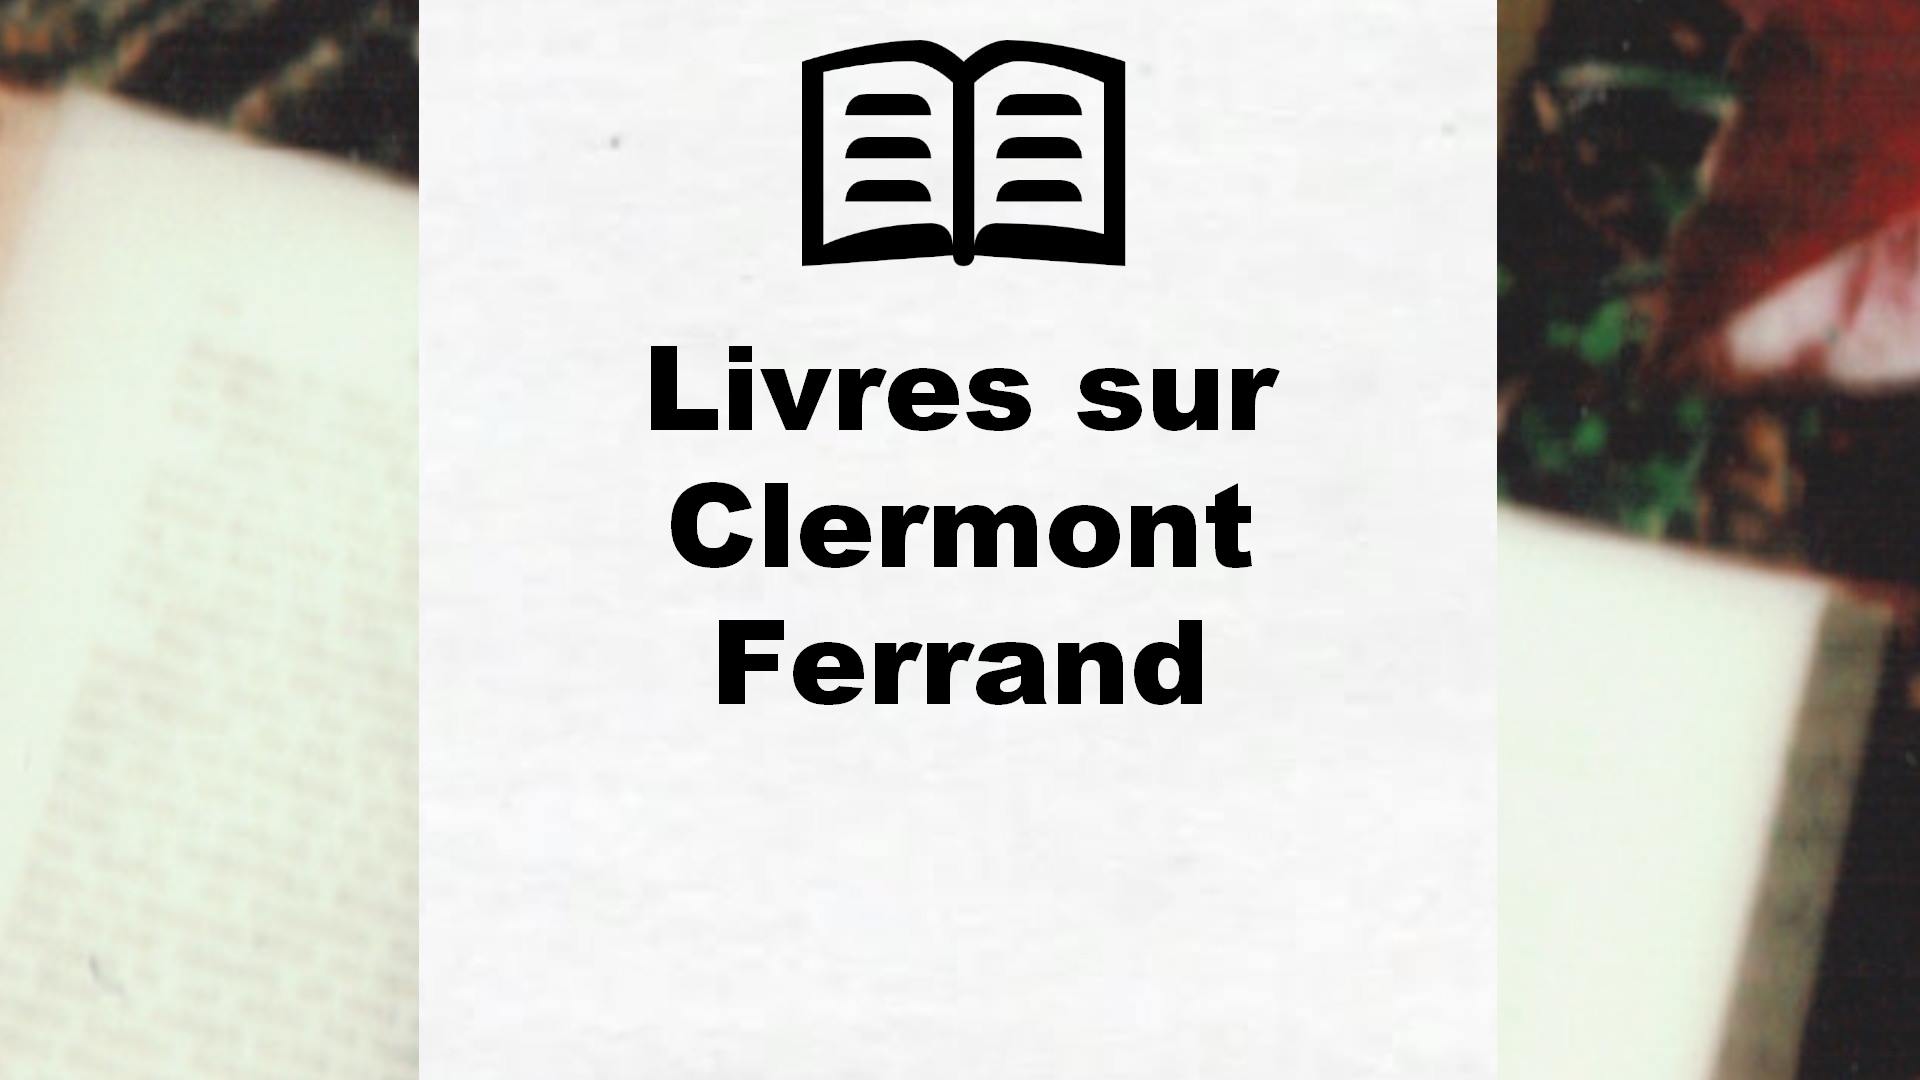 Livres sur Clermont Ferrand